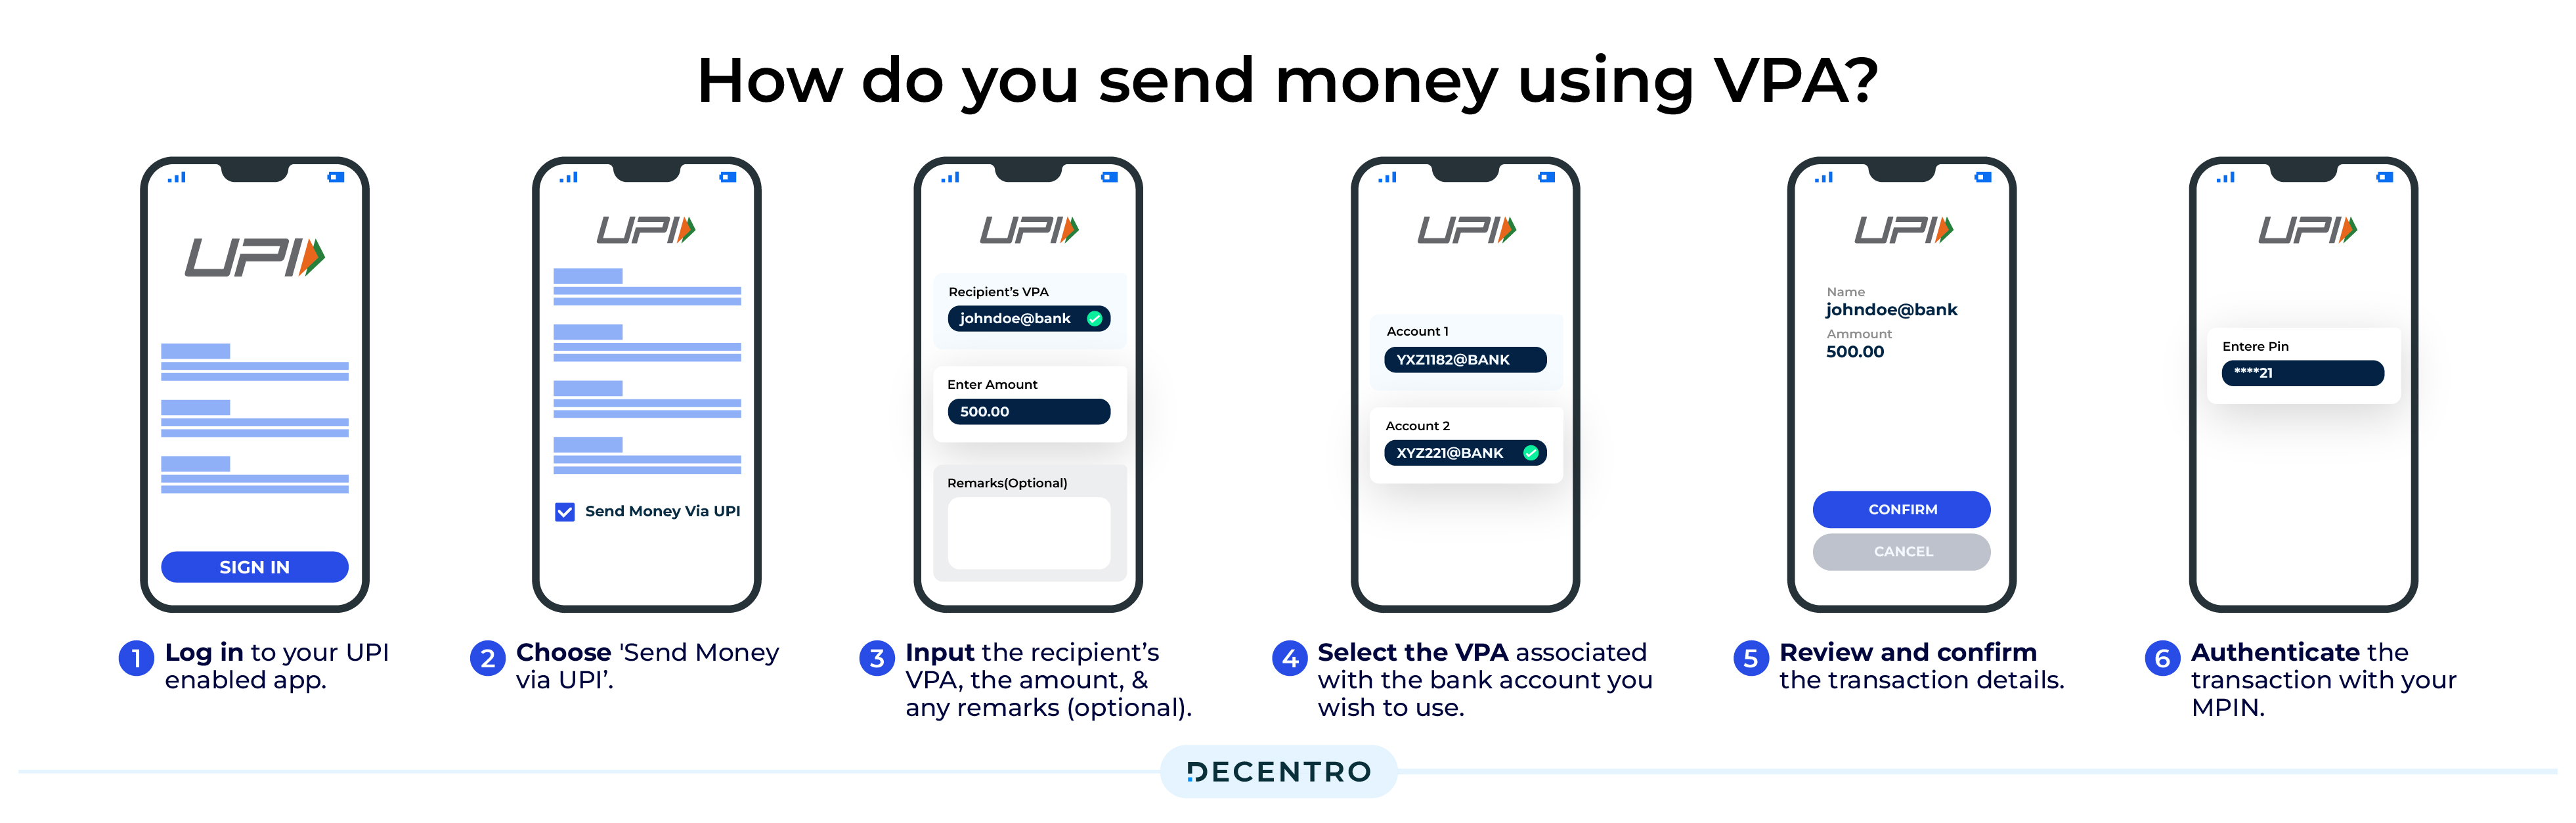 How do you send money using VPA?